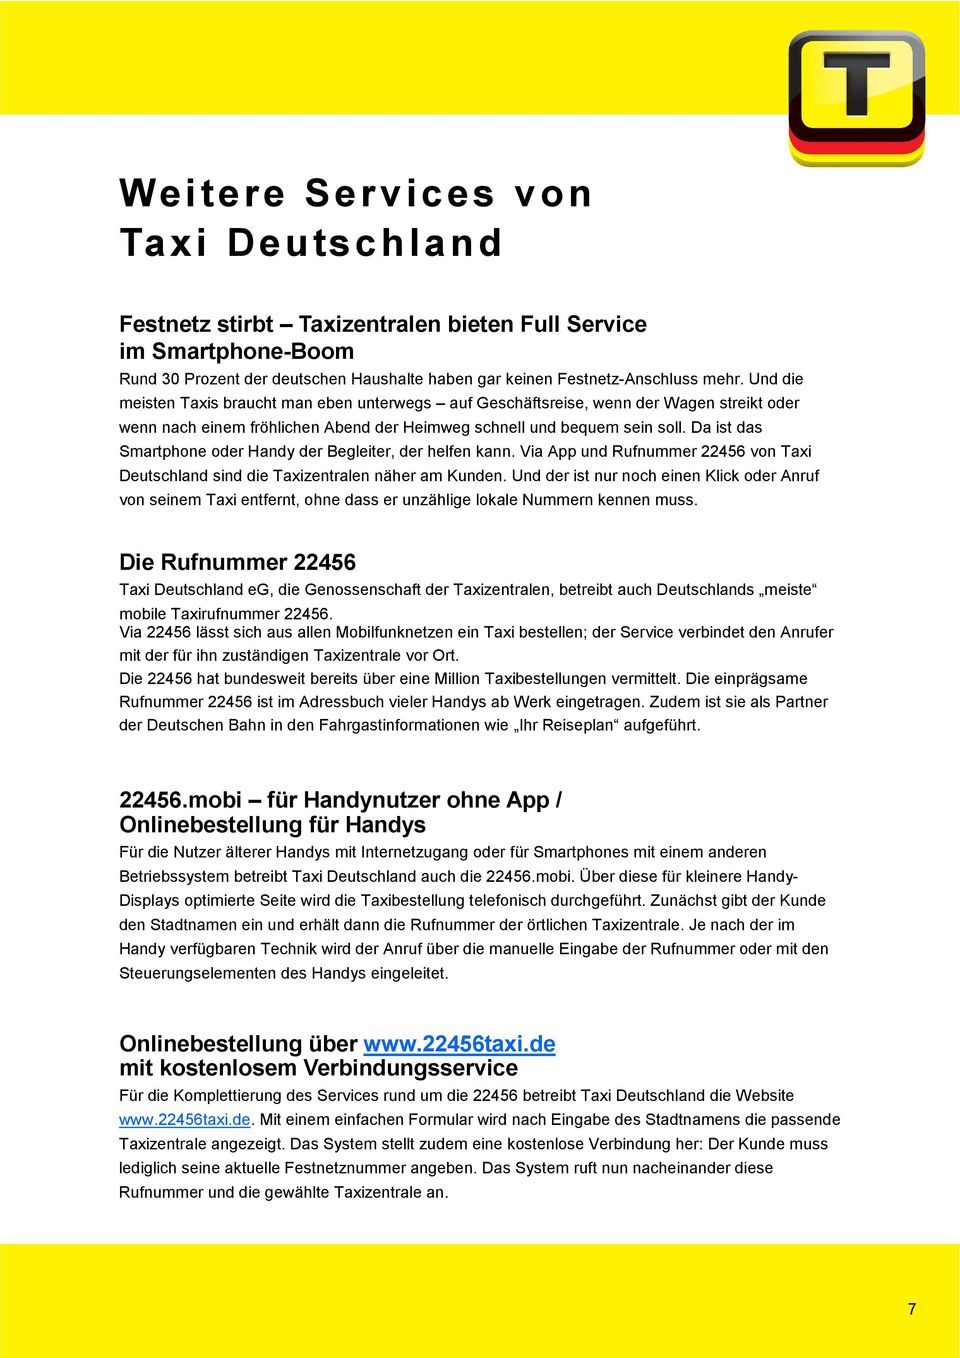 Da ist das Smartphone oder Handy der Begleiter, der helfen kann. Via App und Rufnummer 22456 von Taxi Deutschland sind die Taxizentralen näher am Kunden.